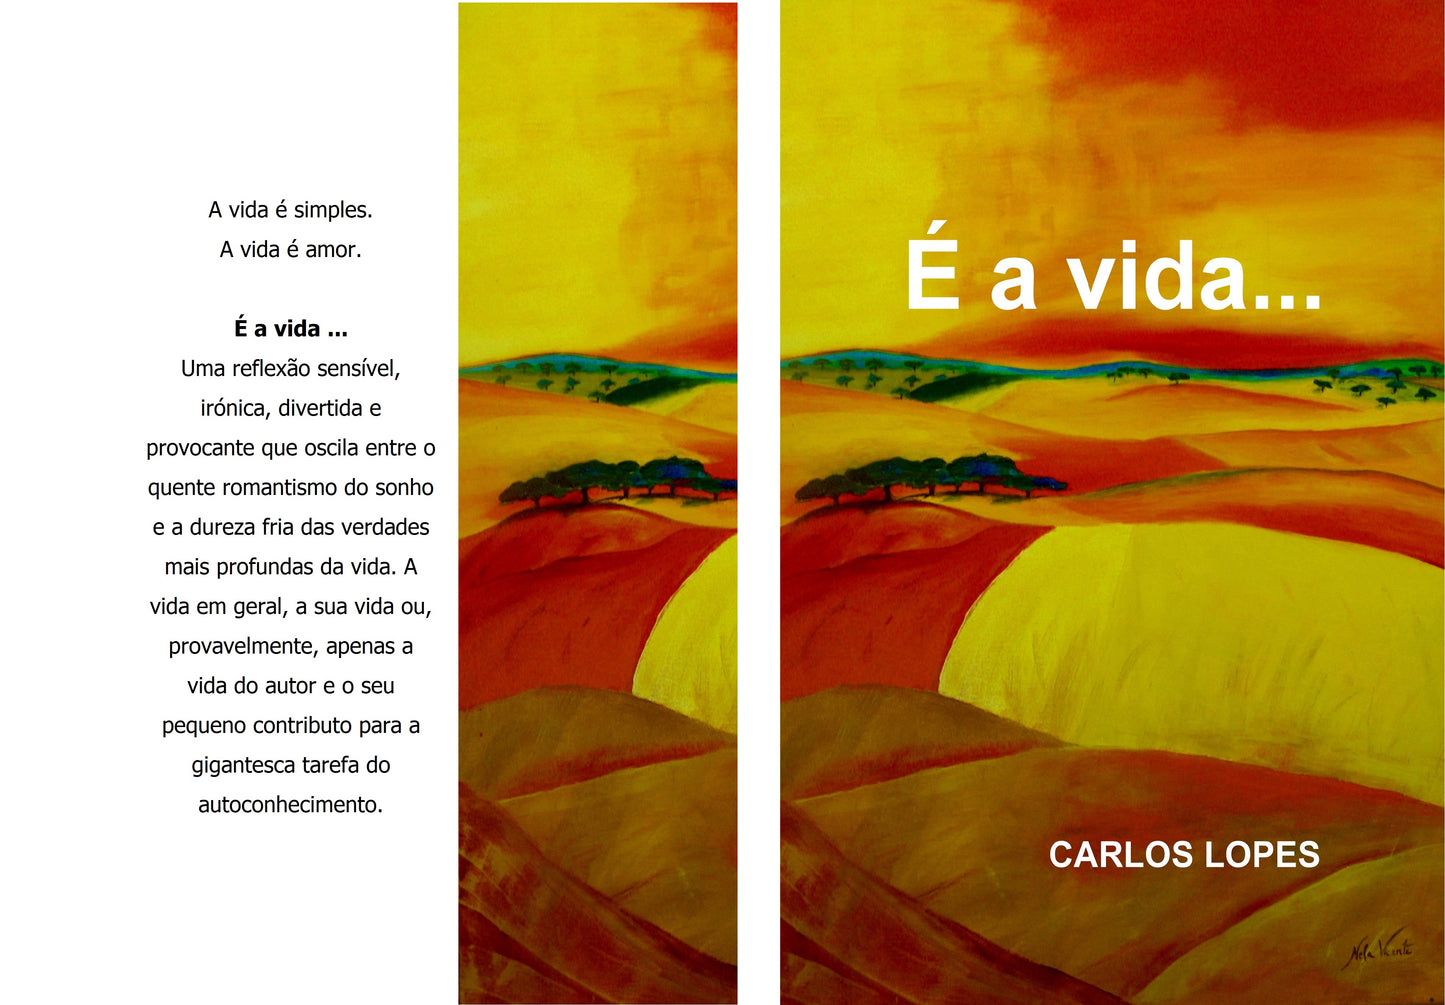 Livro "É a vida" - Carlos Lopes